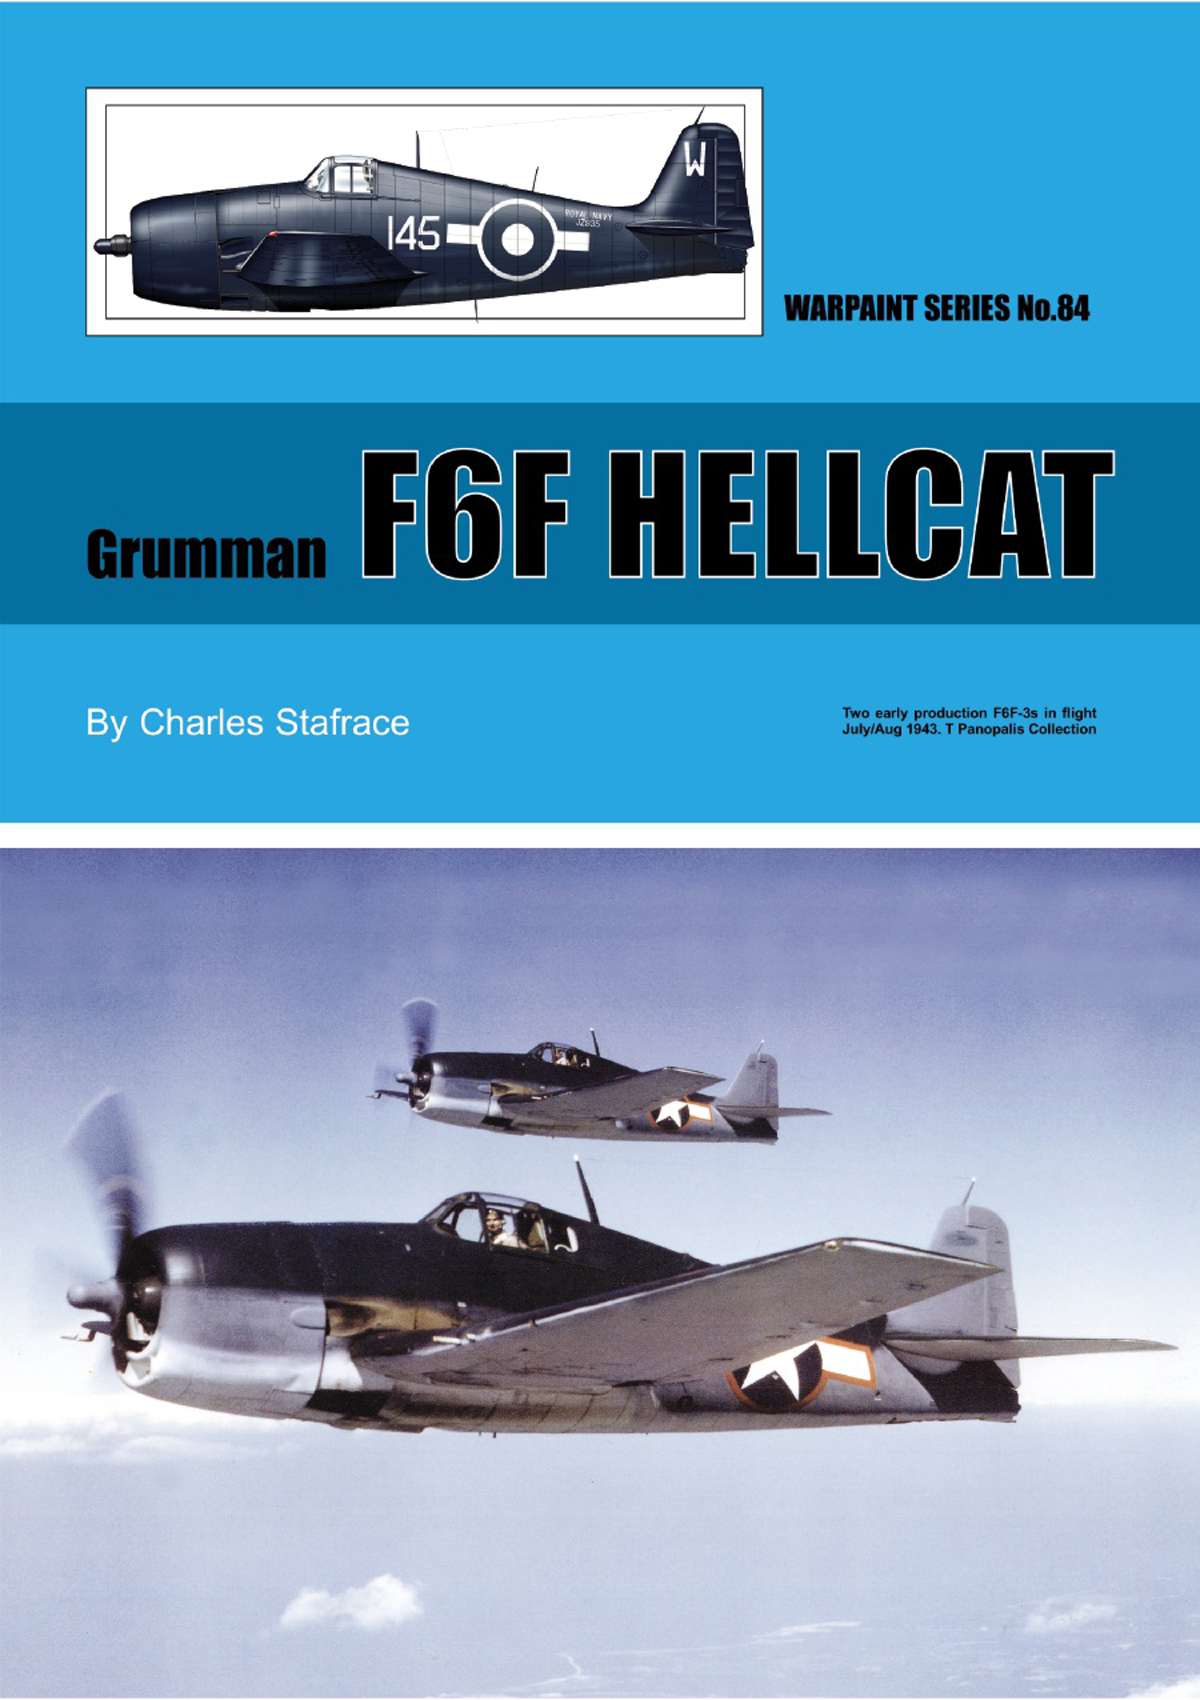 N84 - Grumman F6F Hellcat